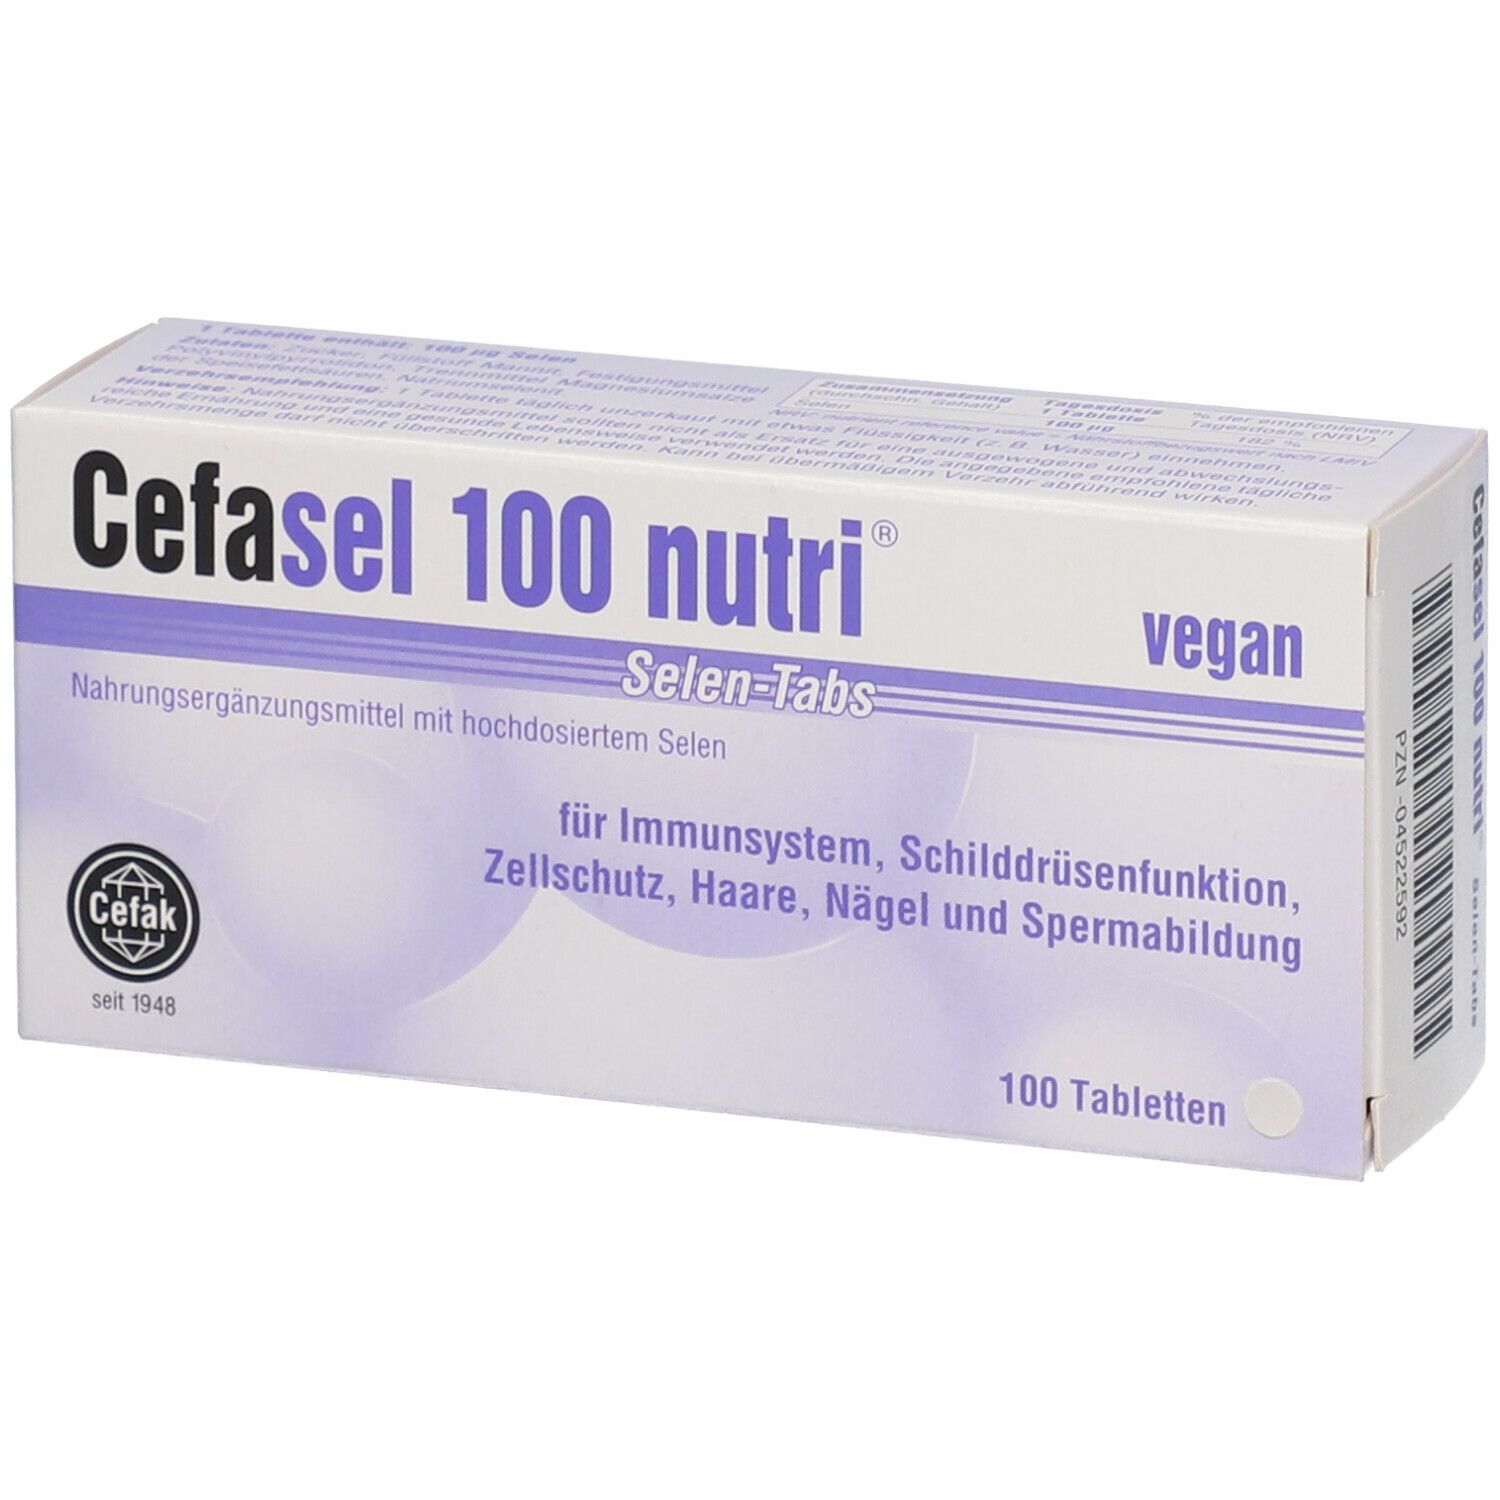 Image of Cefasel 100 nutri® Selen Tabs